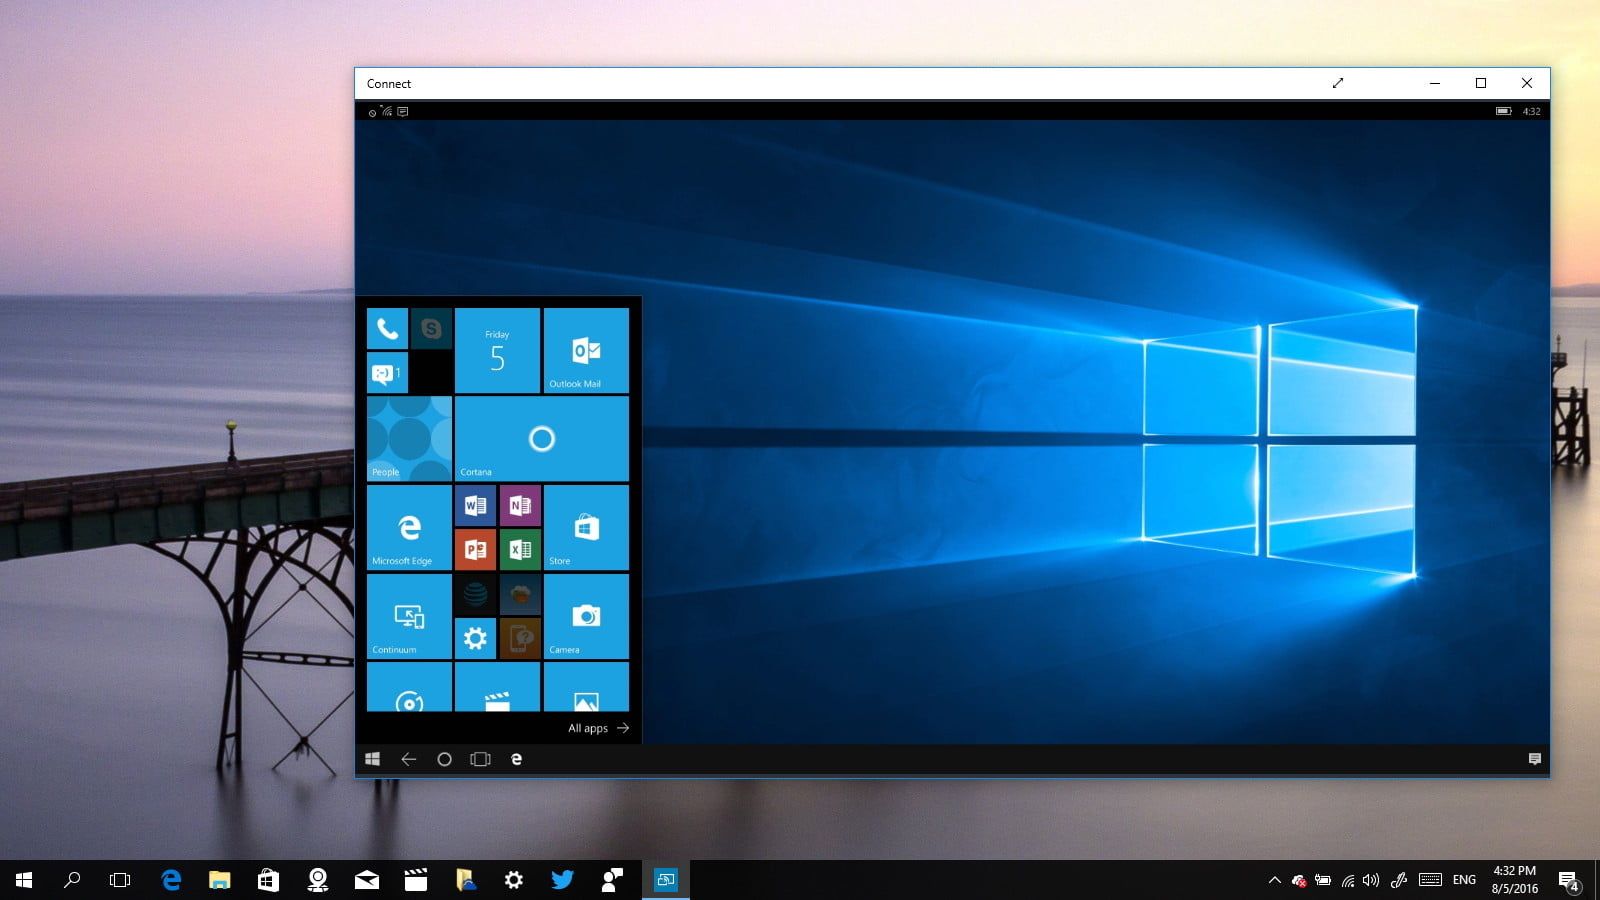 Windows 10 October update 2020 brings changes